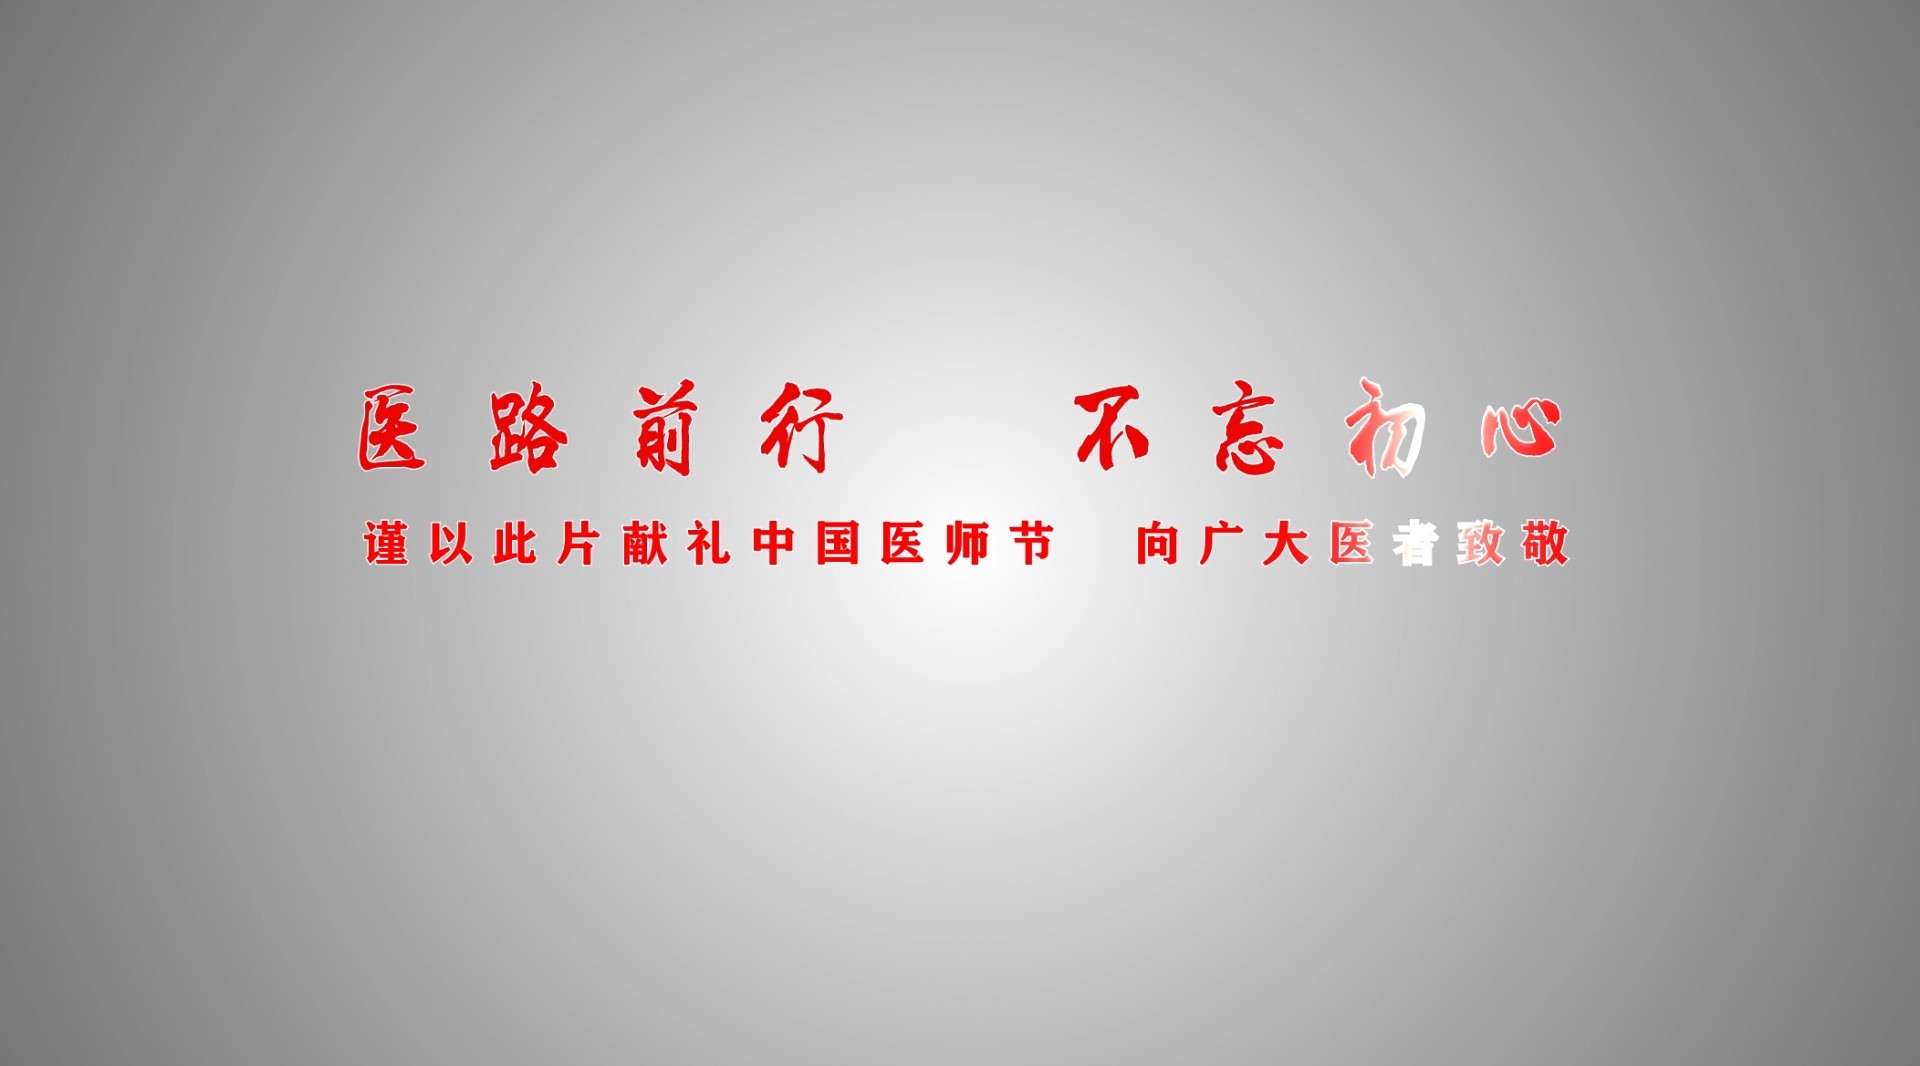 光山县人民医院第二届医师节视频